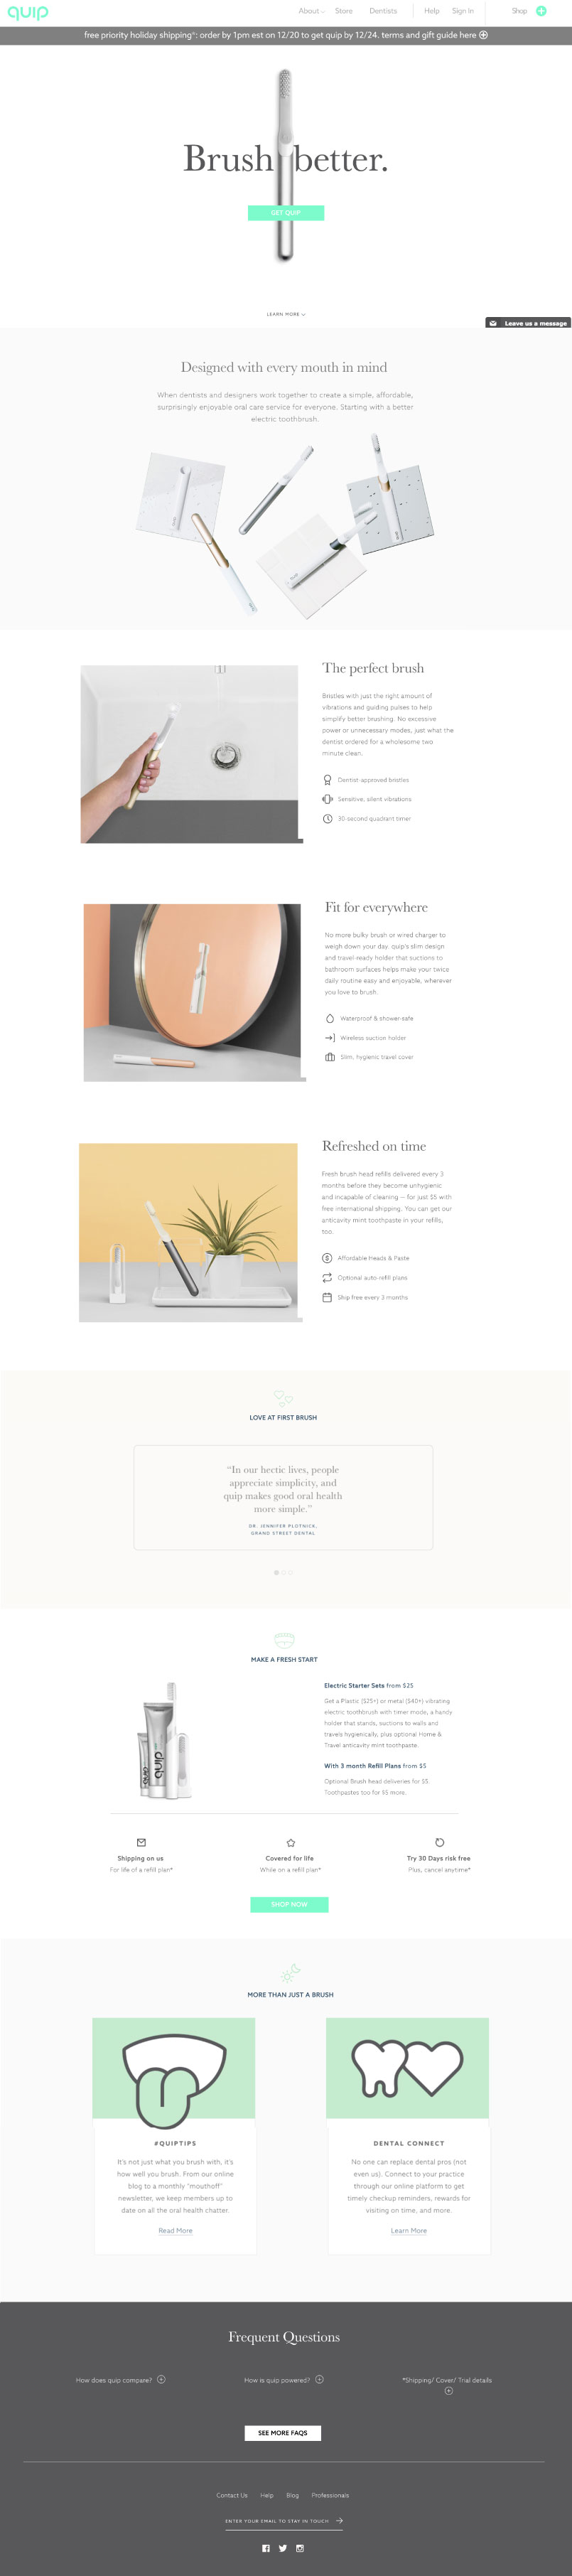 Quip Website Design